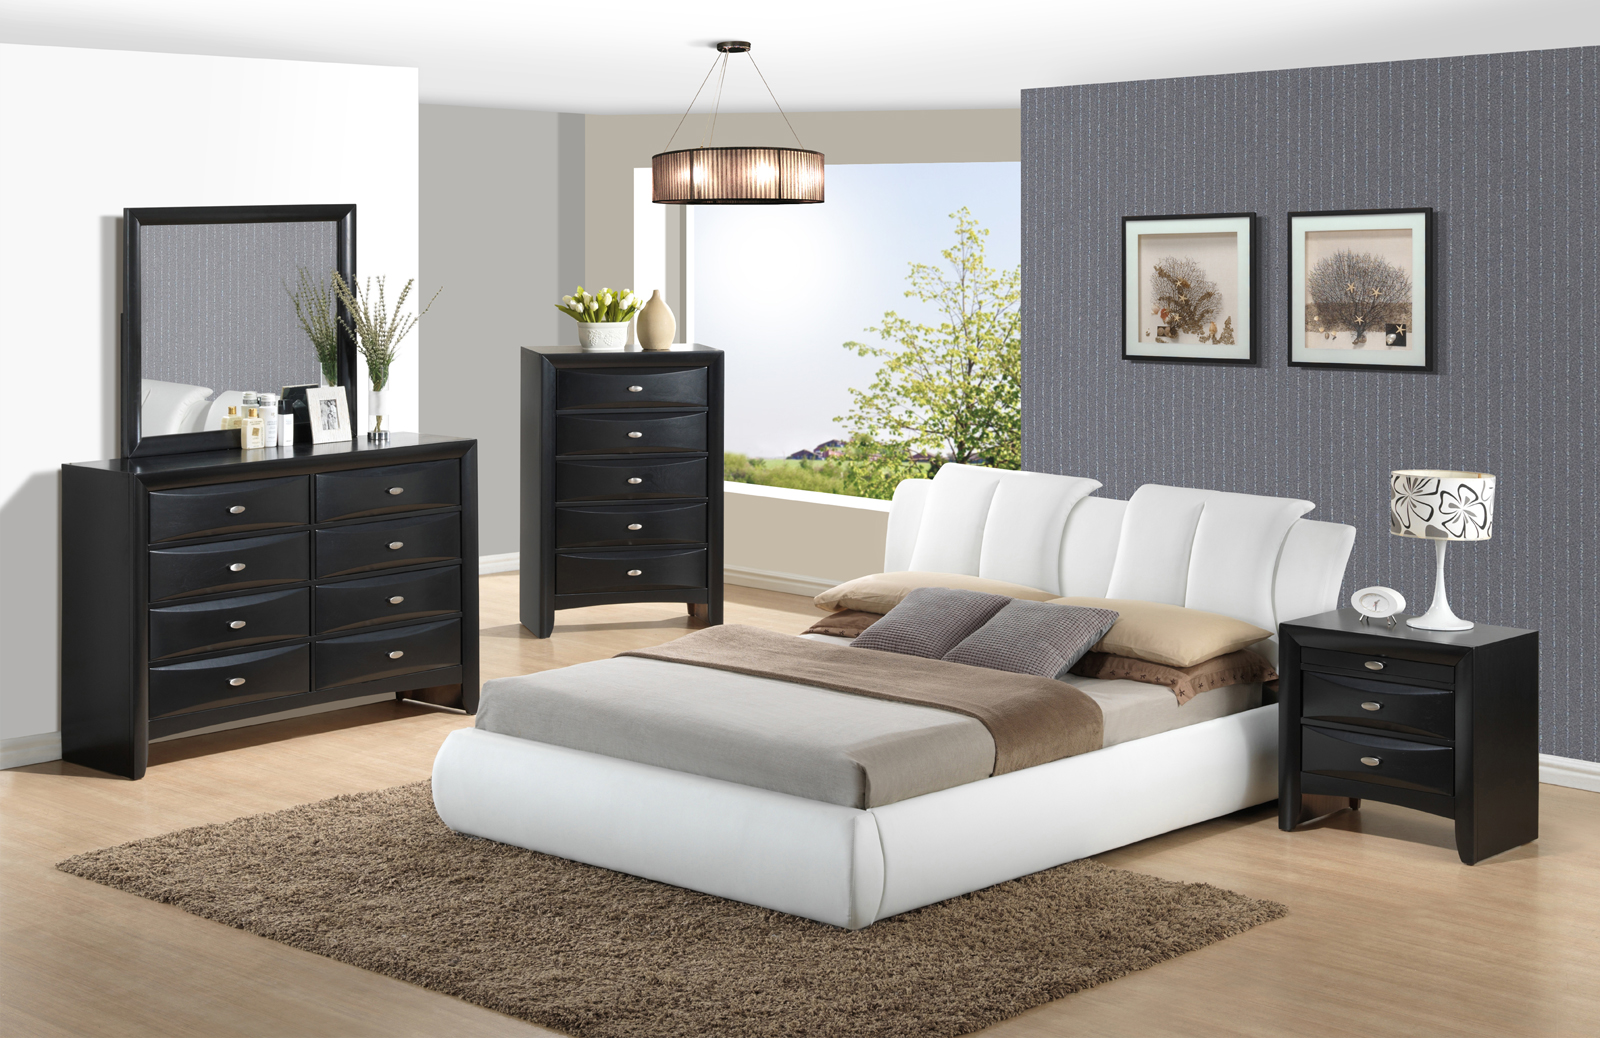 global village bedroom furniture